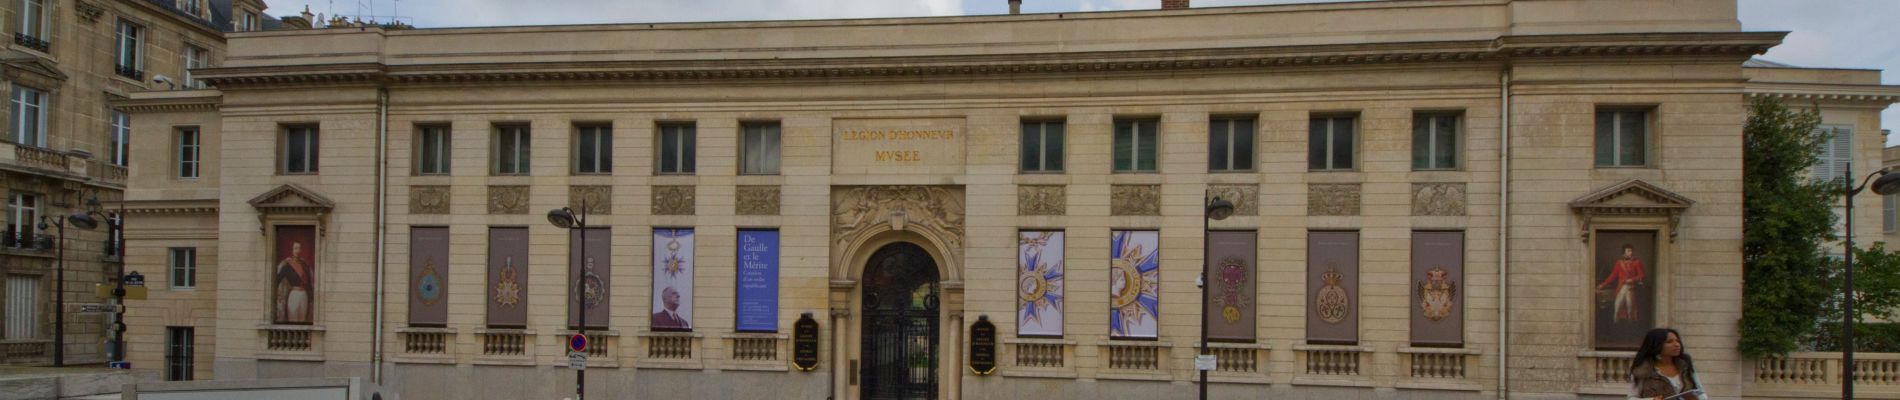 Point of interest Paris - Musée national de la Légion d’honneur et des ordres de chevalerie - Photo